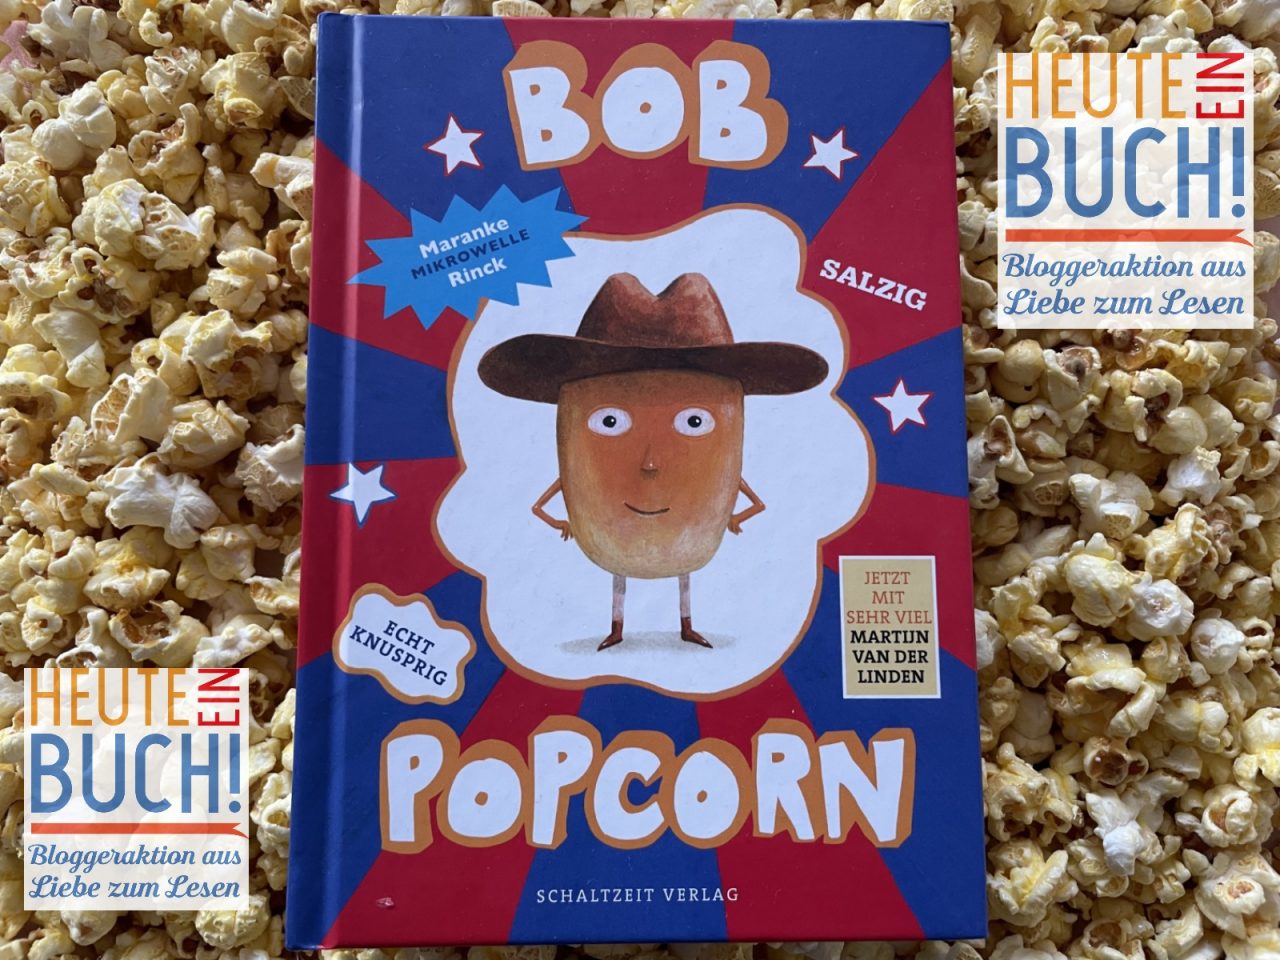 Auf Popcorn liegt das Kinderbuch "Bob Popcorn" - links und rechts ist das Logo von "Heute ein Buch" positioniert.